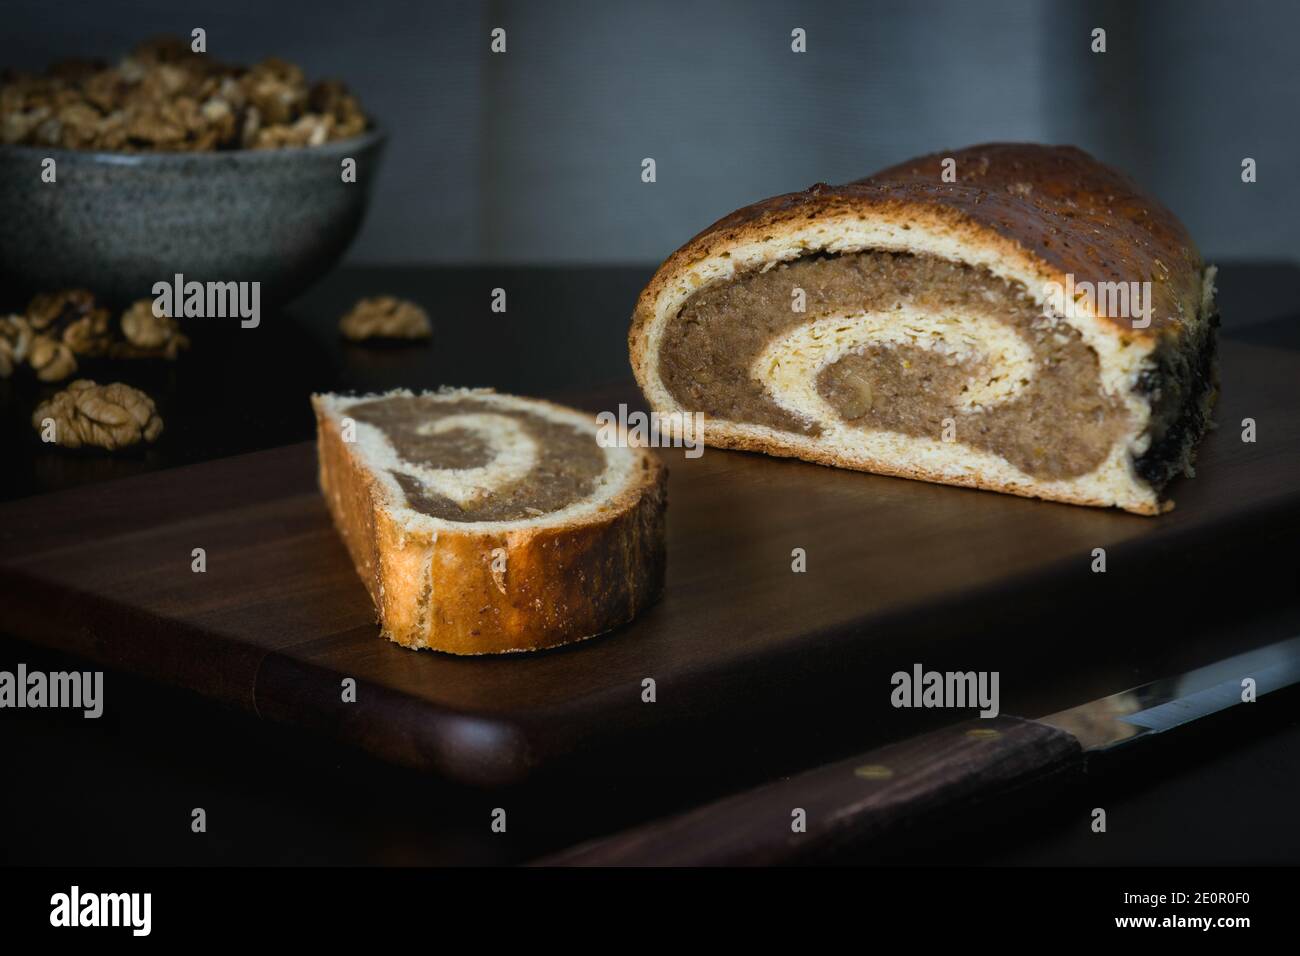 Frisch gebackene Walnussrolle auf dem Holzschneidebrett. Traditionelle ungarische Torte. Food Photography Kollektion. Stockfoto